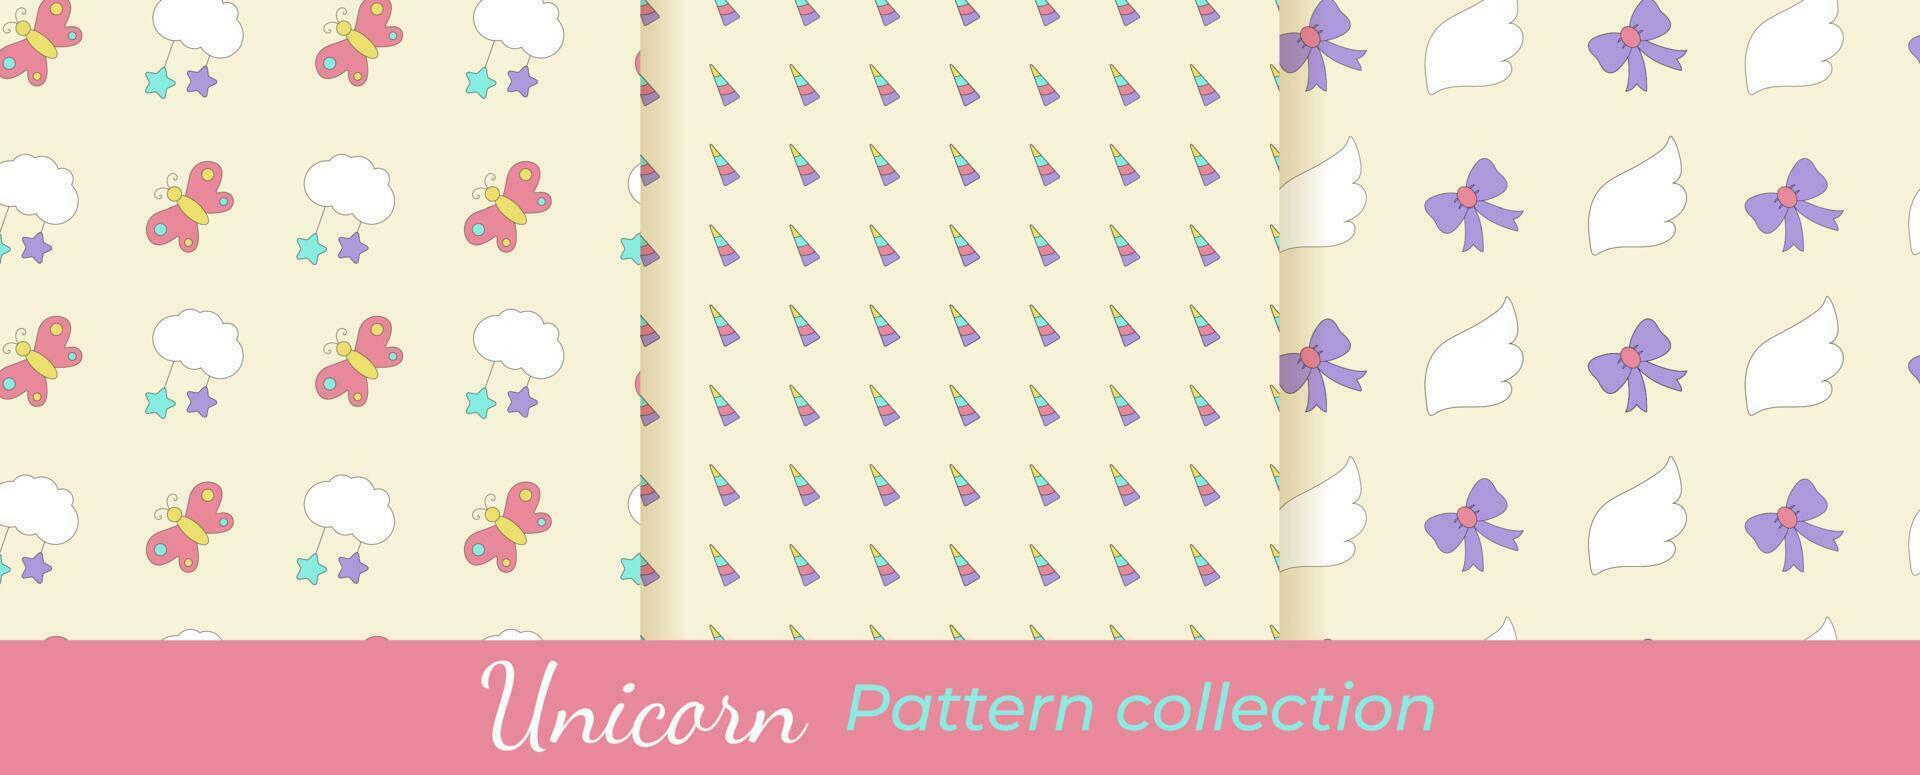 verzameling van eenhoorn patronen. magisch vector patronen set. naadloos patronen met wolken, hoorns, vlinders, Vleugels, bogen, sterren.